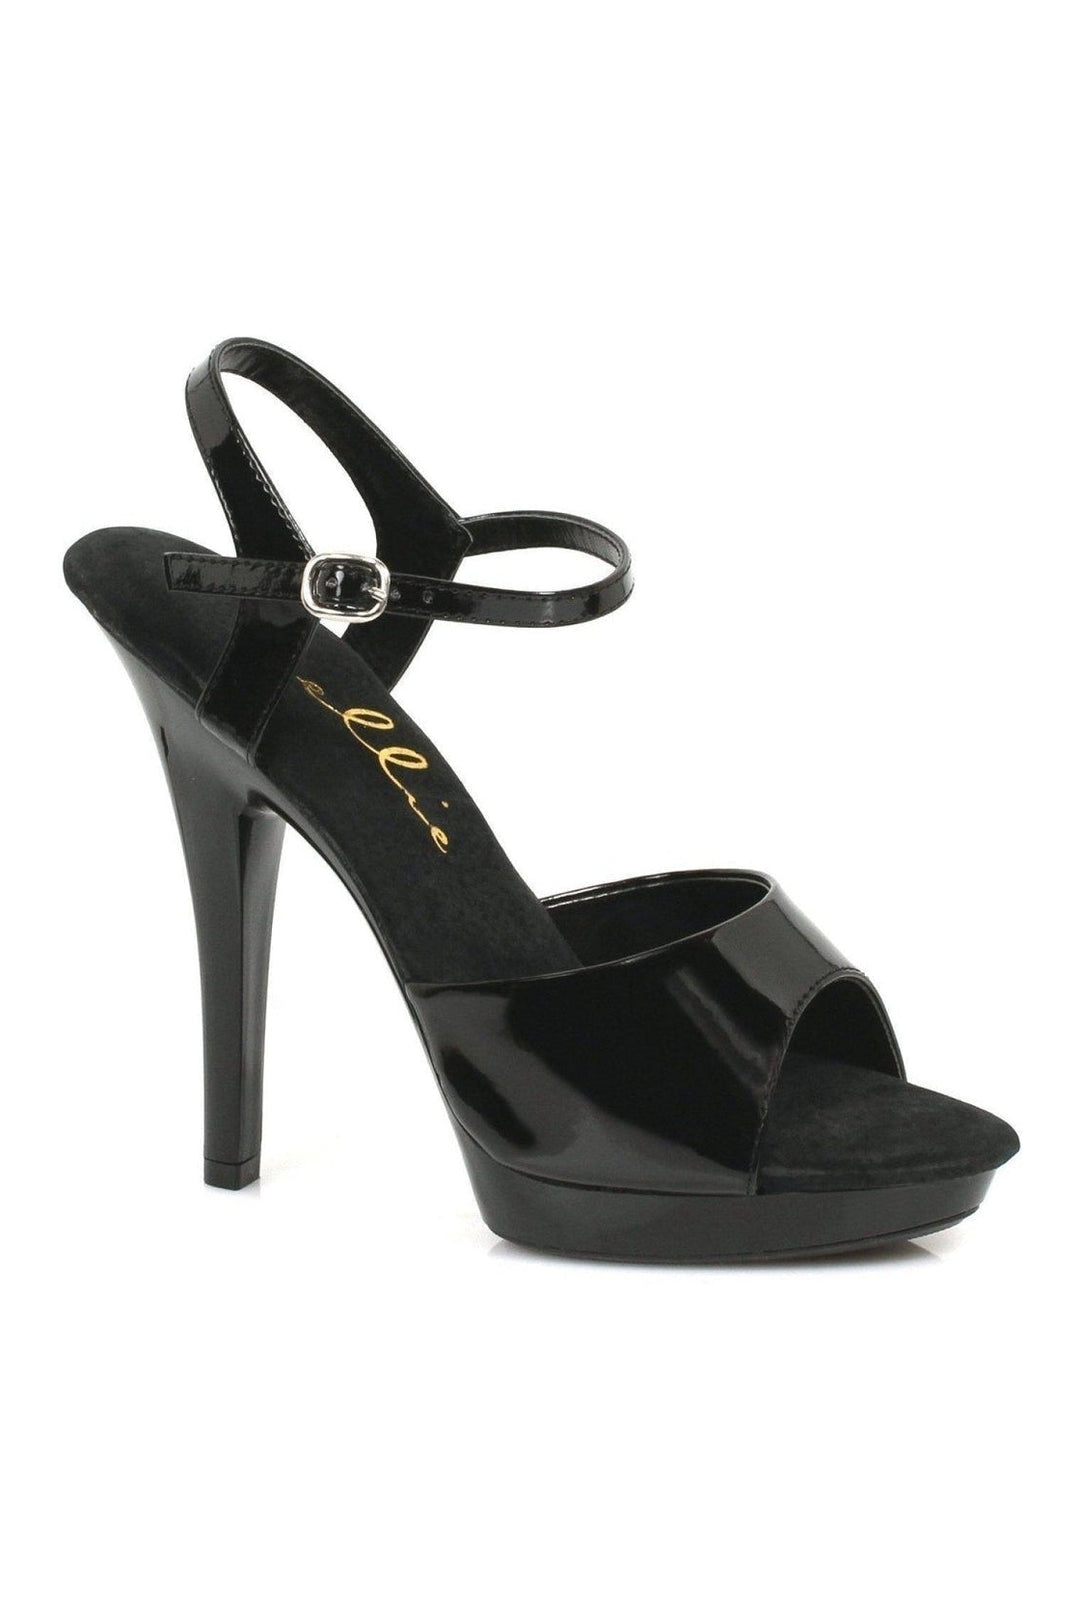 M-JULIET Stripper Sandal | Black Patent-Ellie Shoes-SEXYSHOES.COM